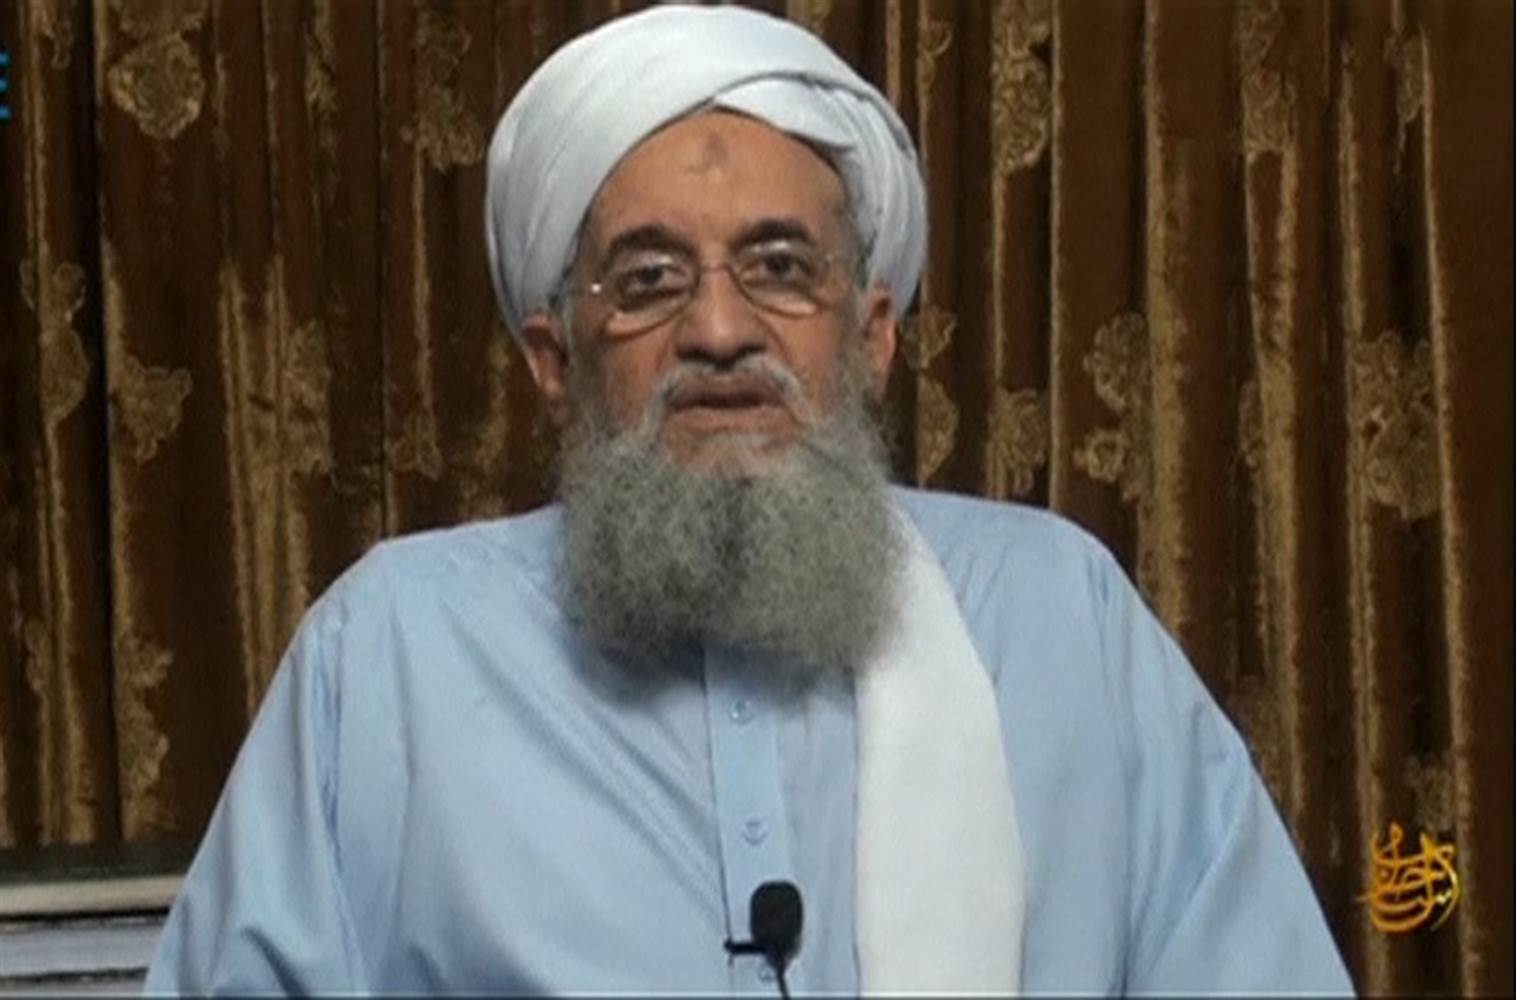  Al Qaeda ordena secuestrar occidentales para canjearlos por yihadistas presos